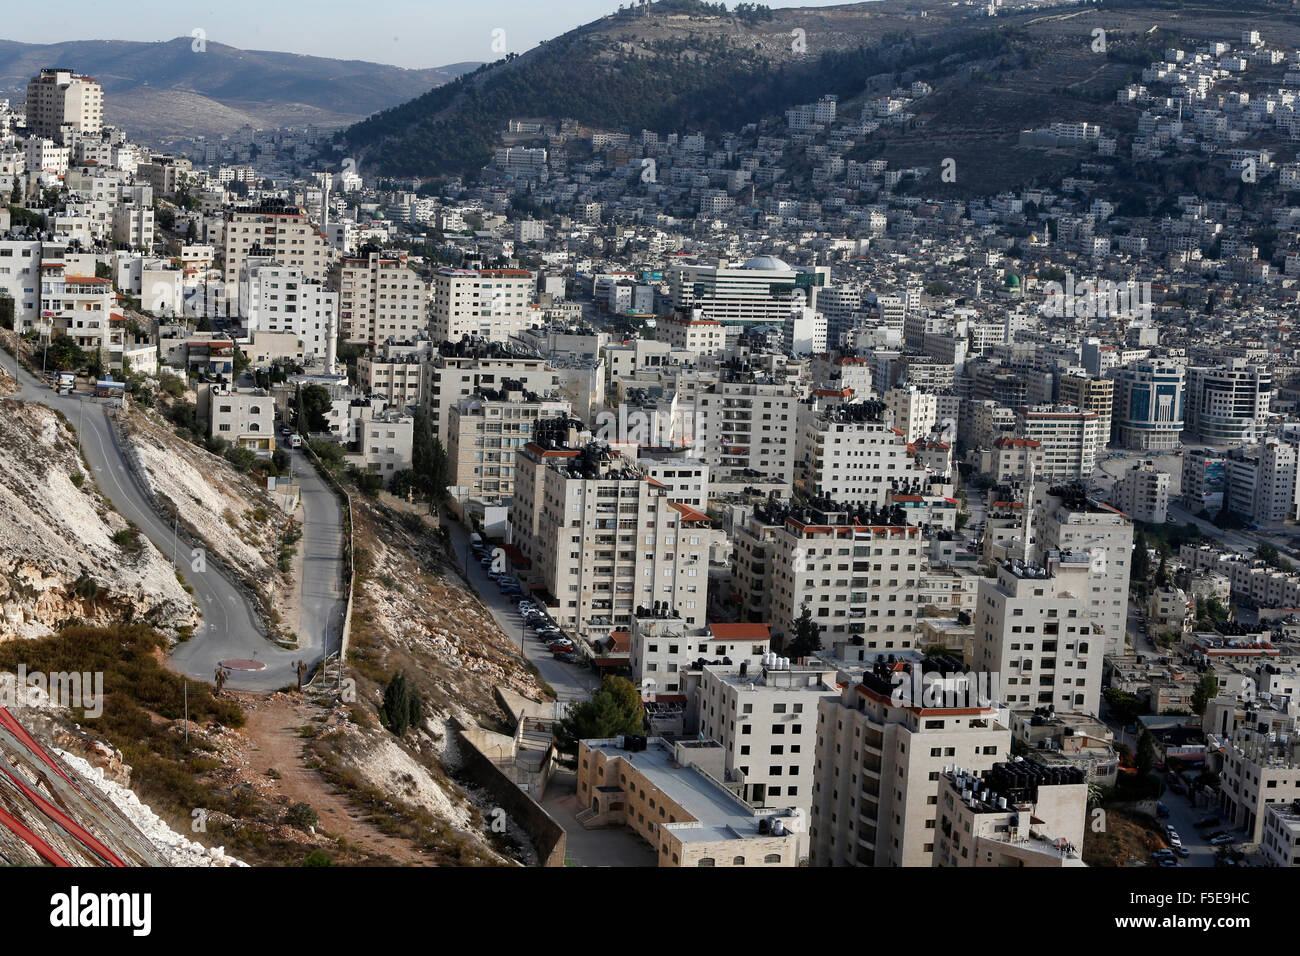 La ville de Naplouse, en Cisjordanie, dans les territoires palestiniens, au Moyen-Orient Banque D'Images